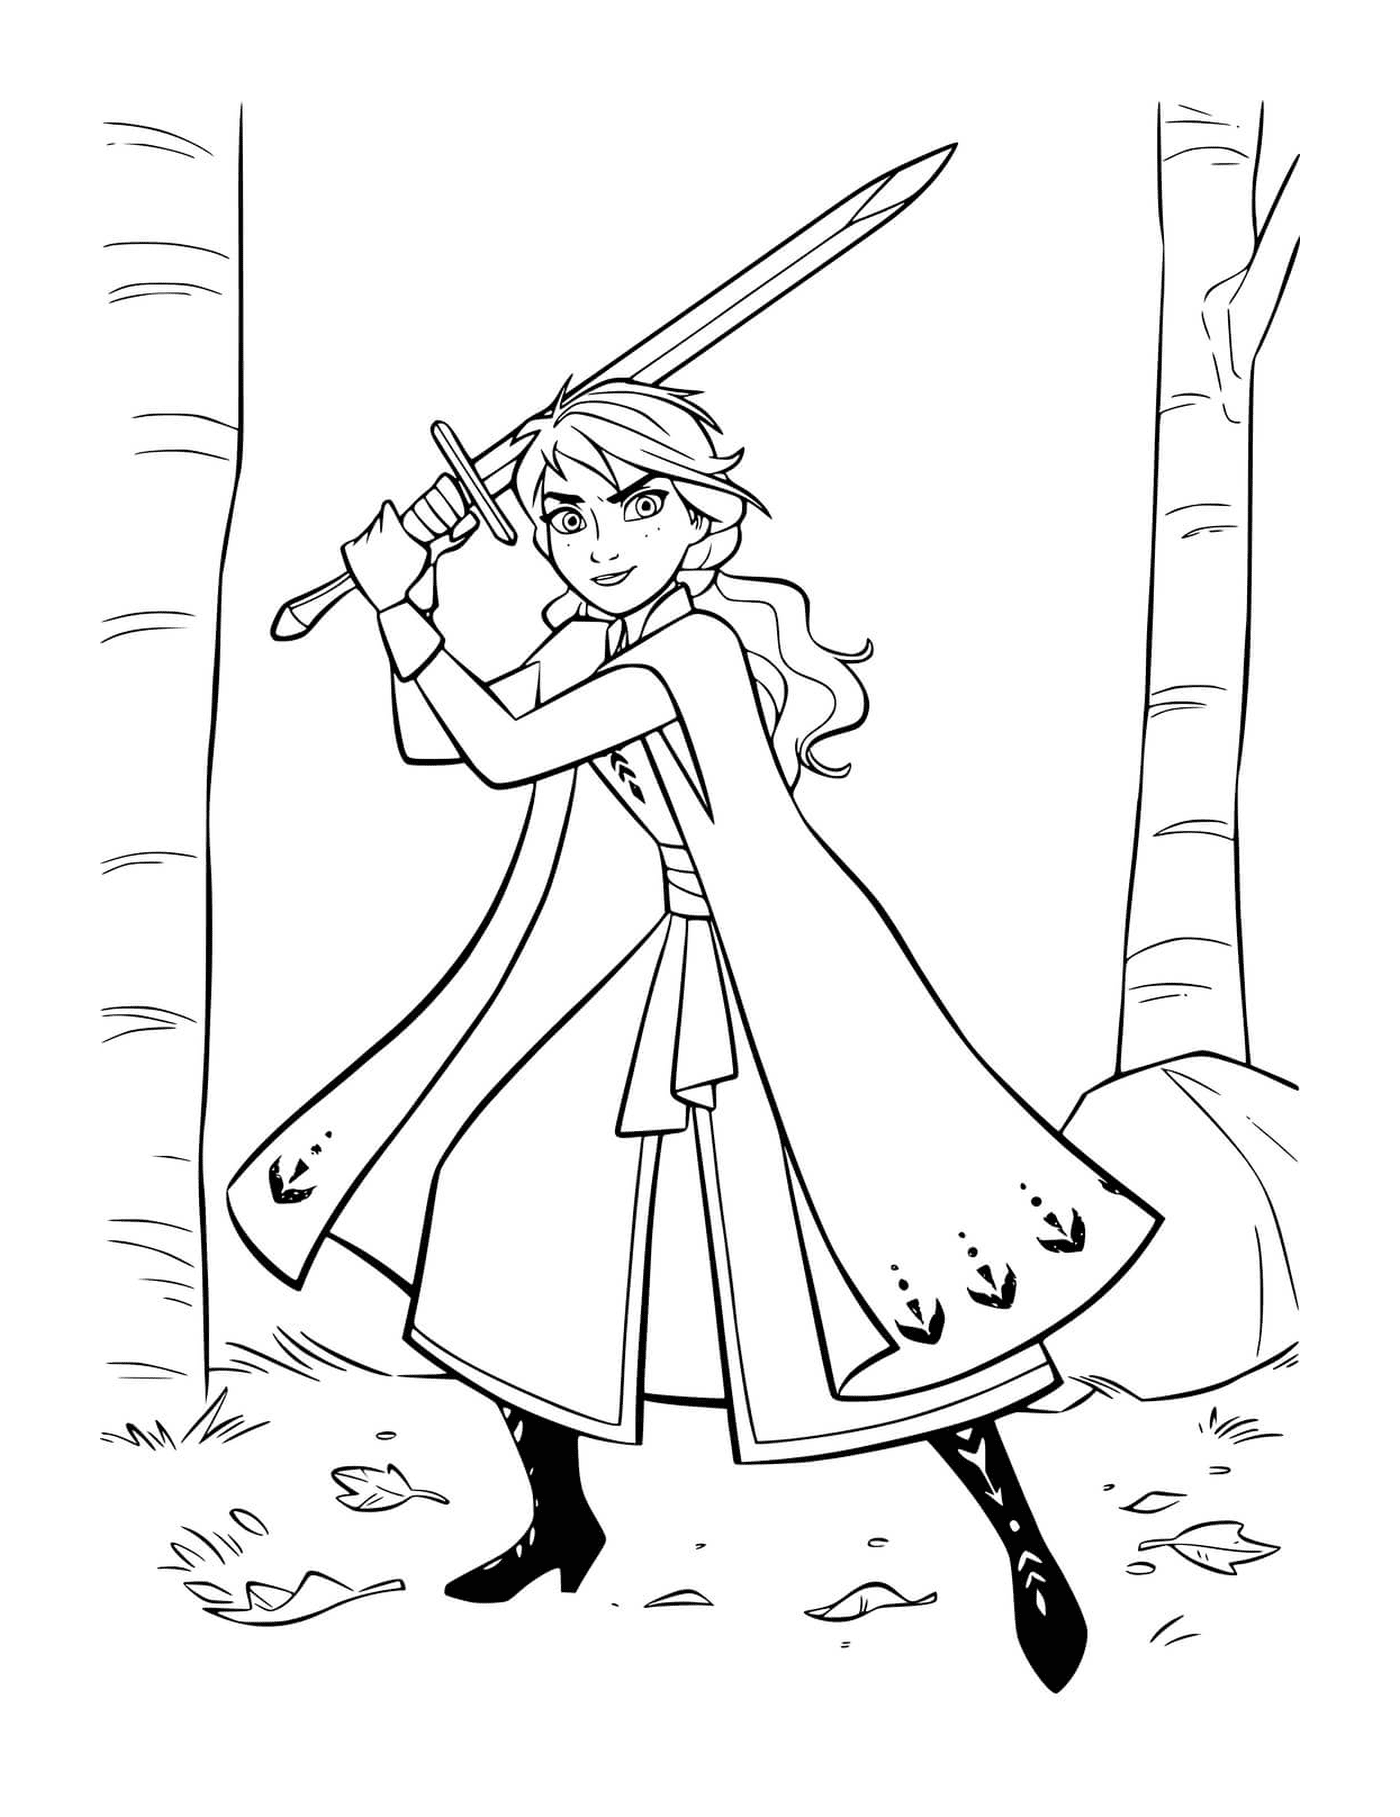   Anna défend royaume avec épée 